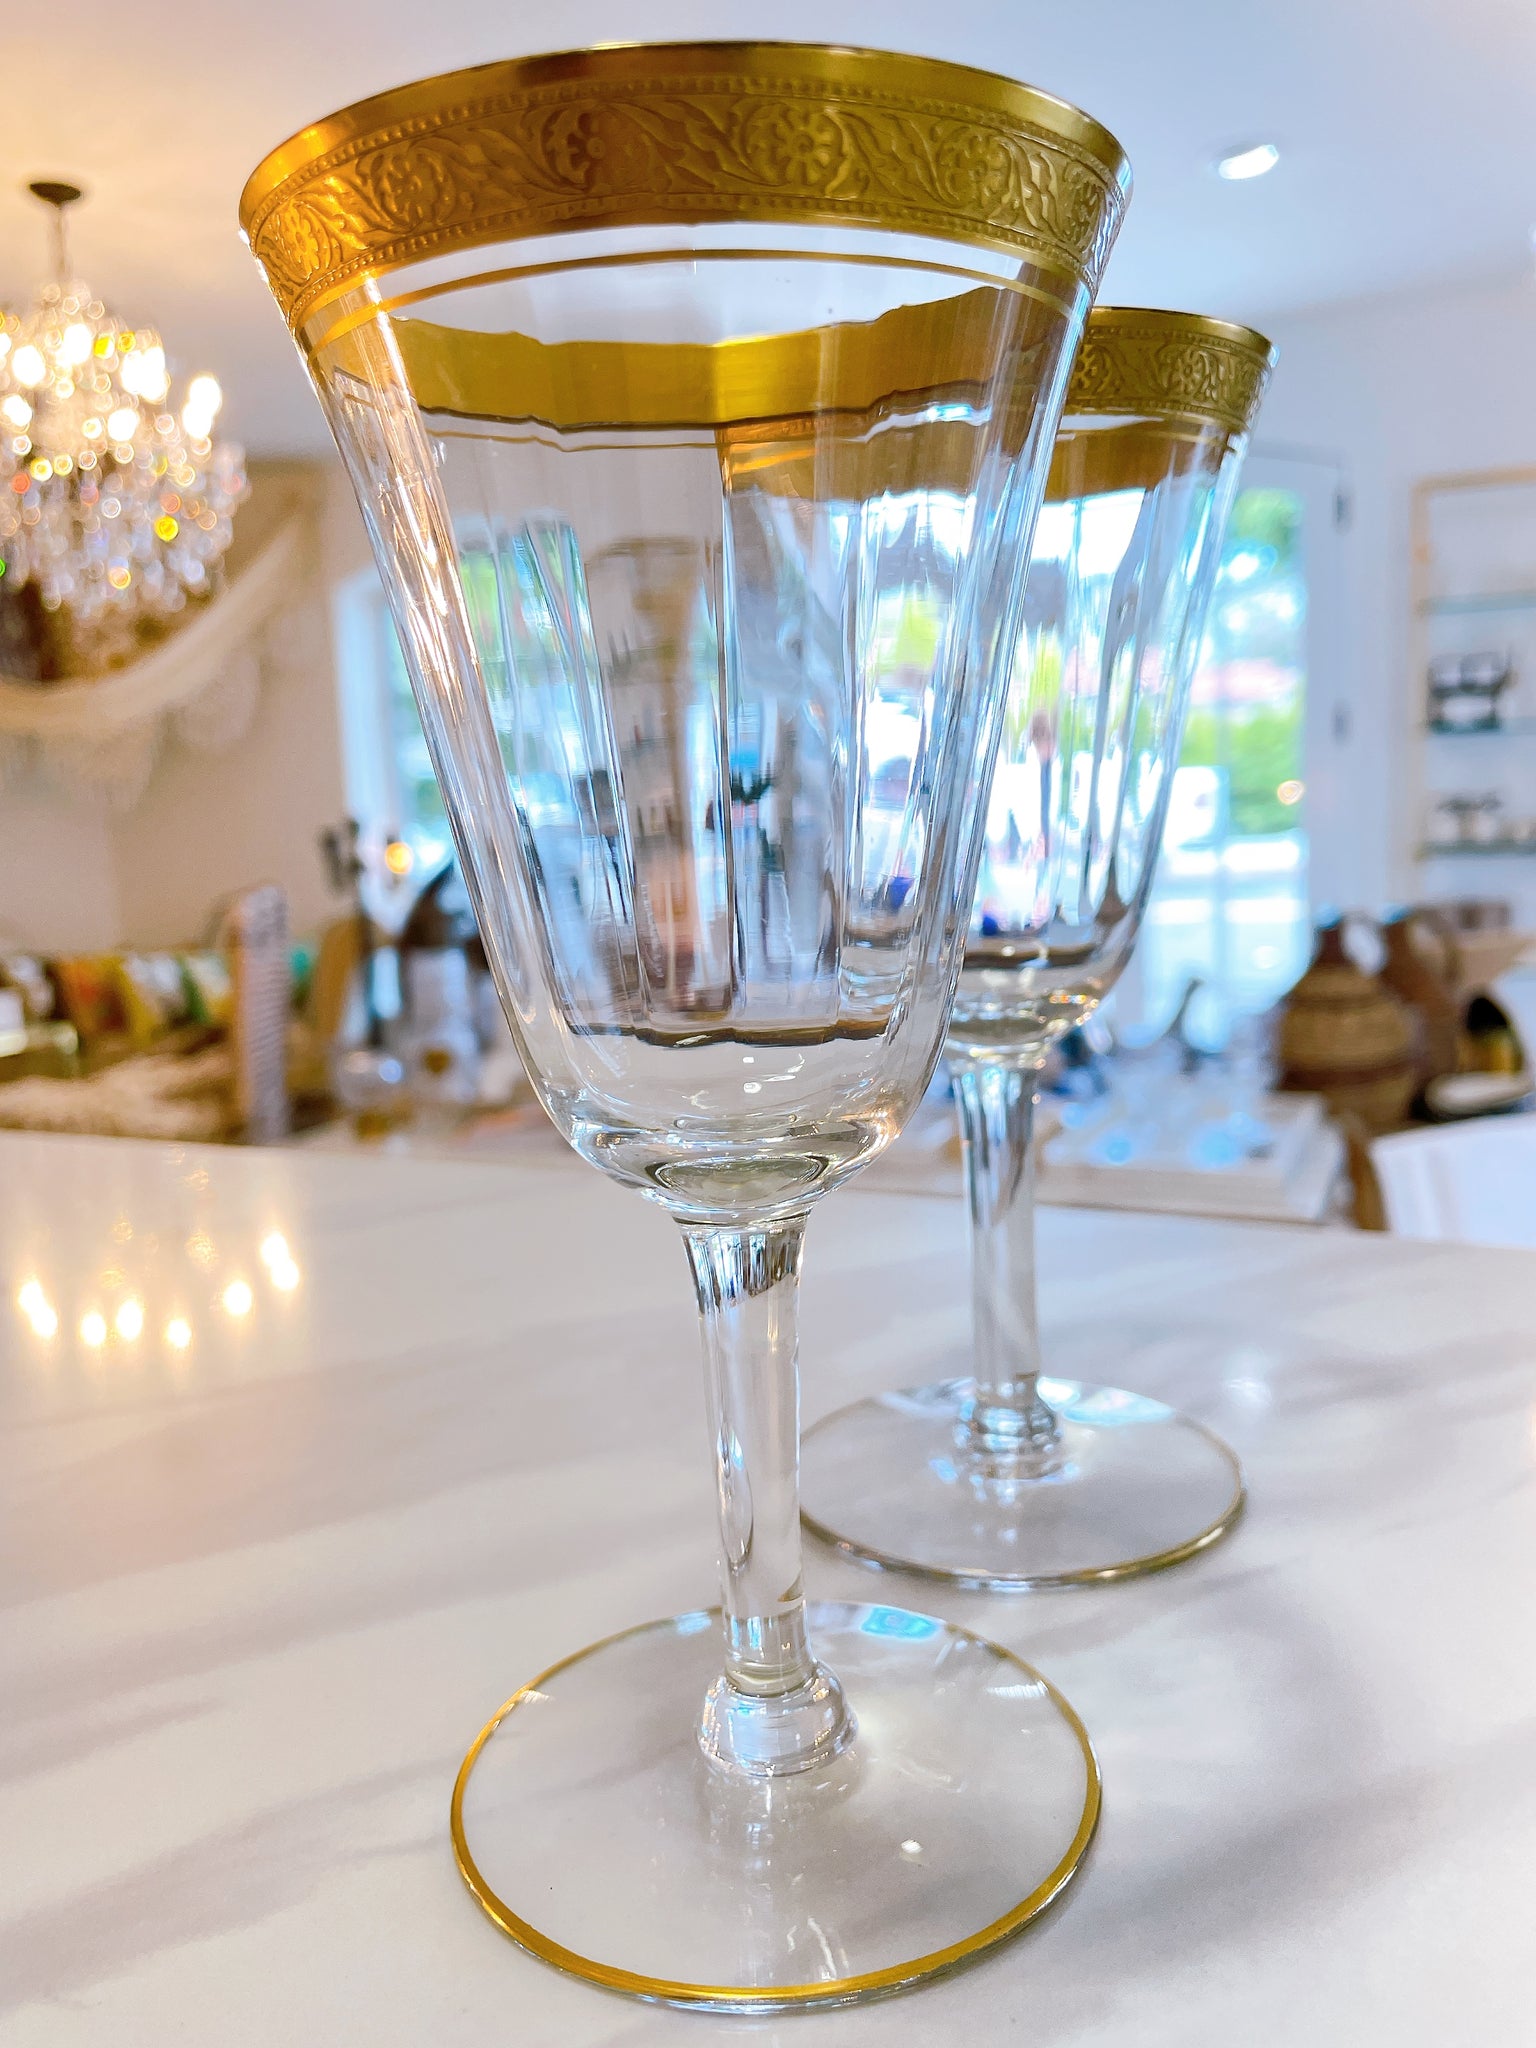 Vintage Gold-Rimmed Wine/Bar Glasses Set/4 – Arrow&Branch Home